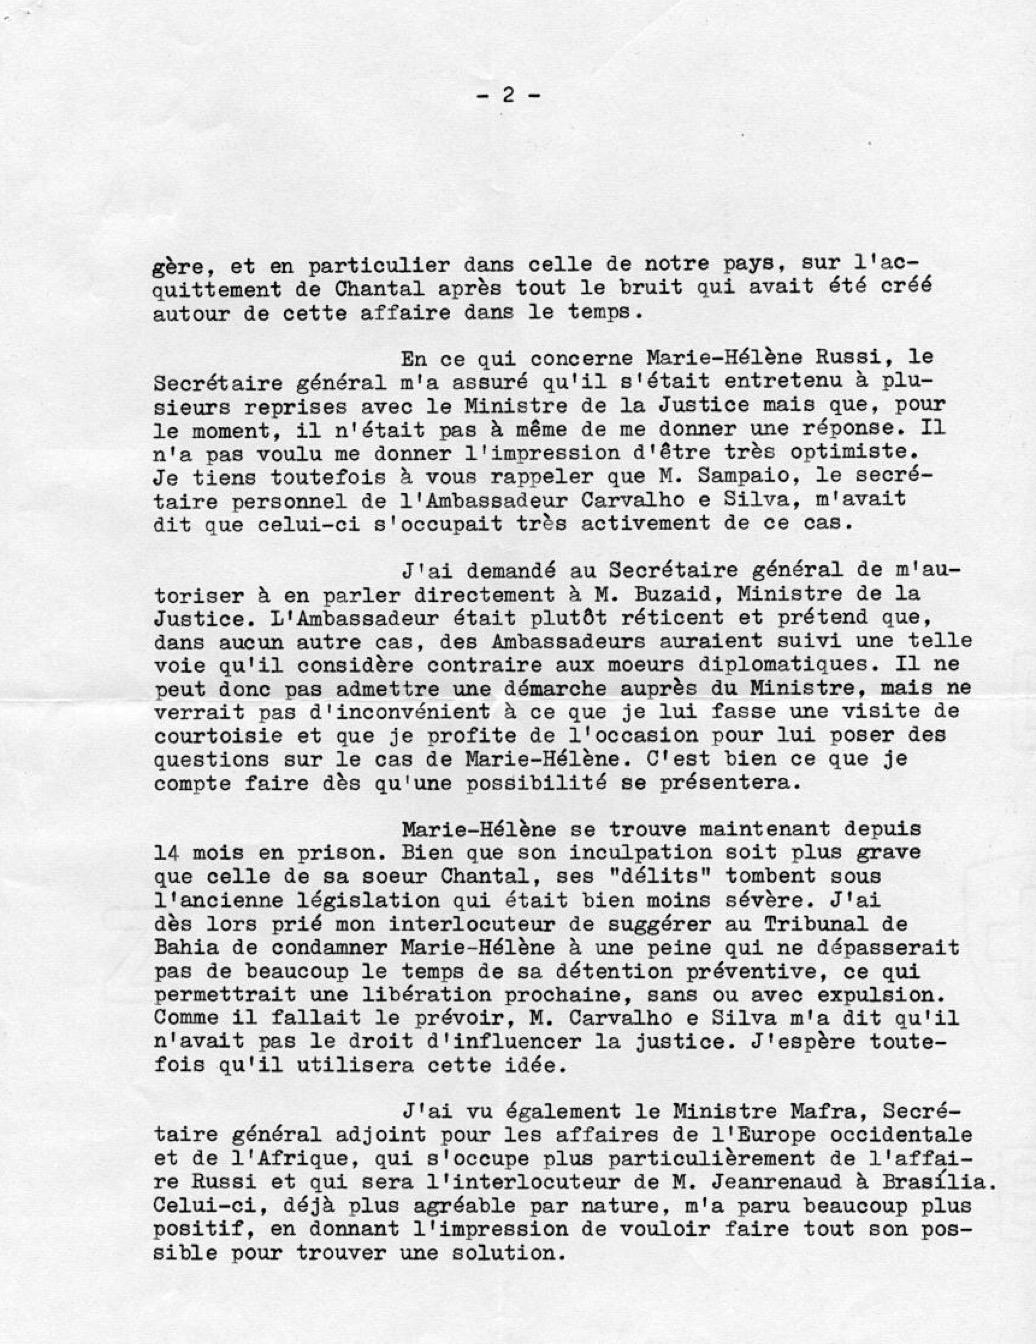 Documentos diplomáticos do consulado suíço durante o regime militar